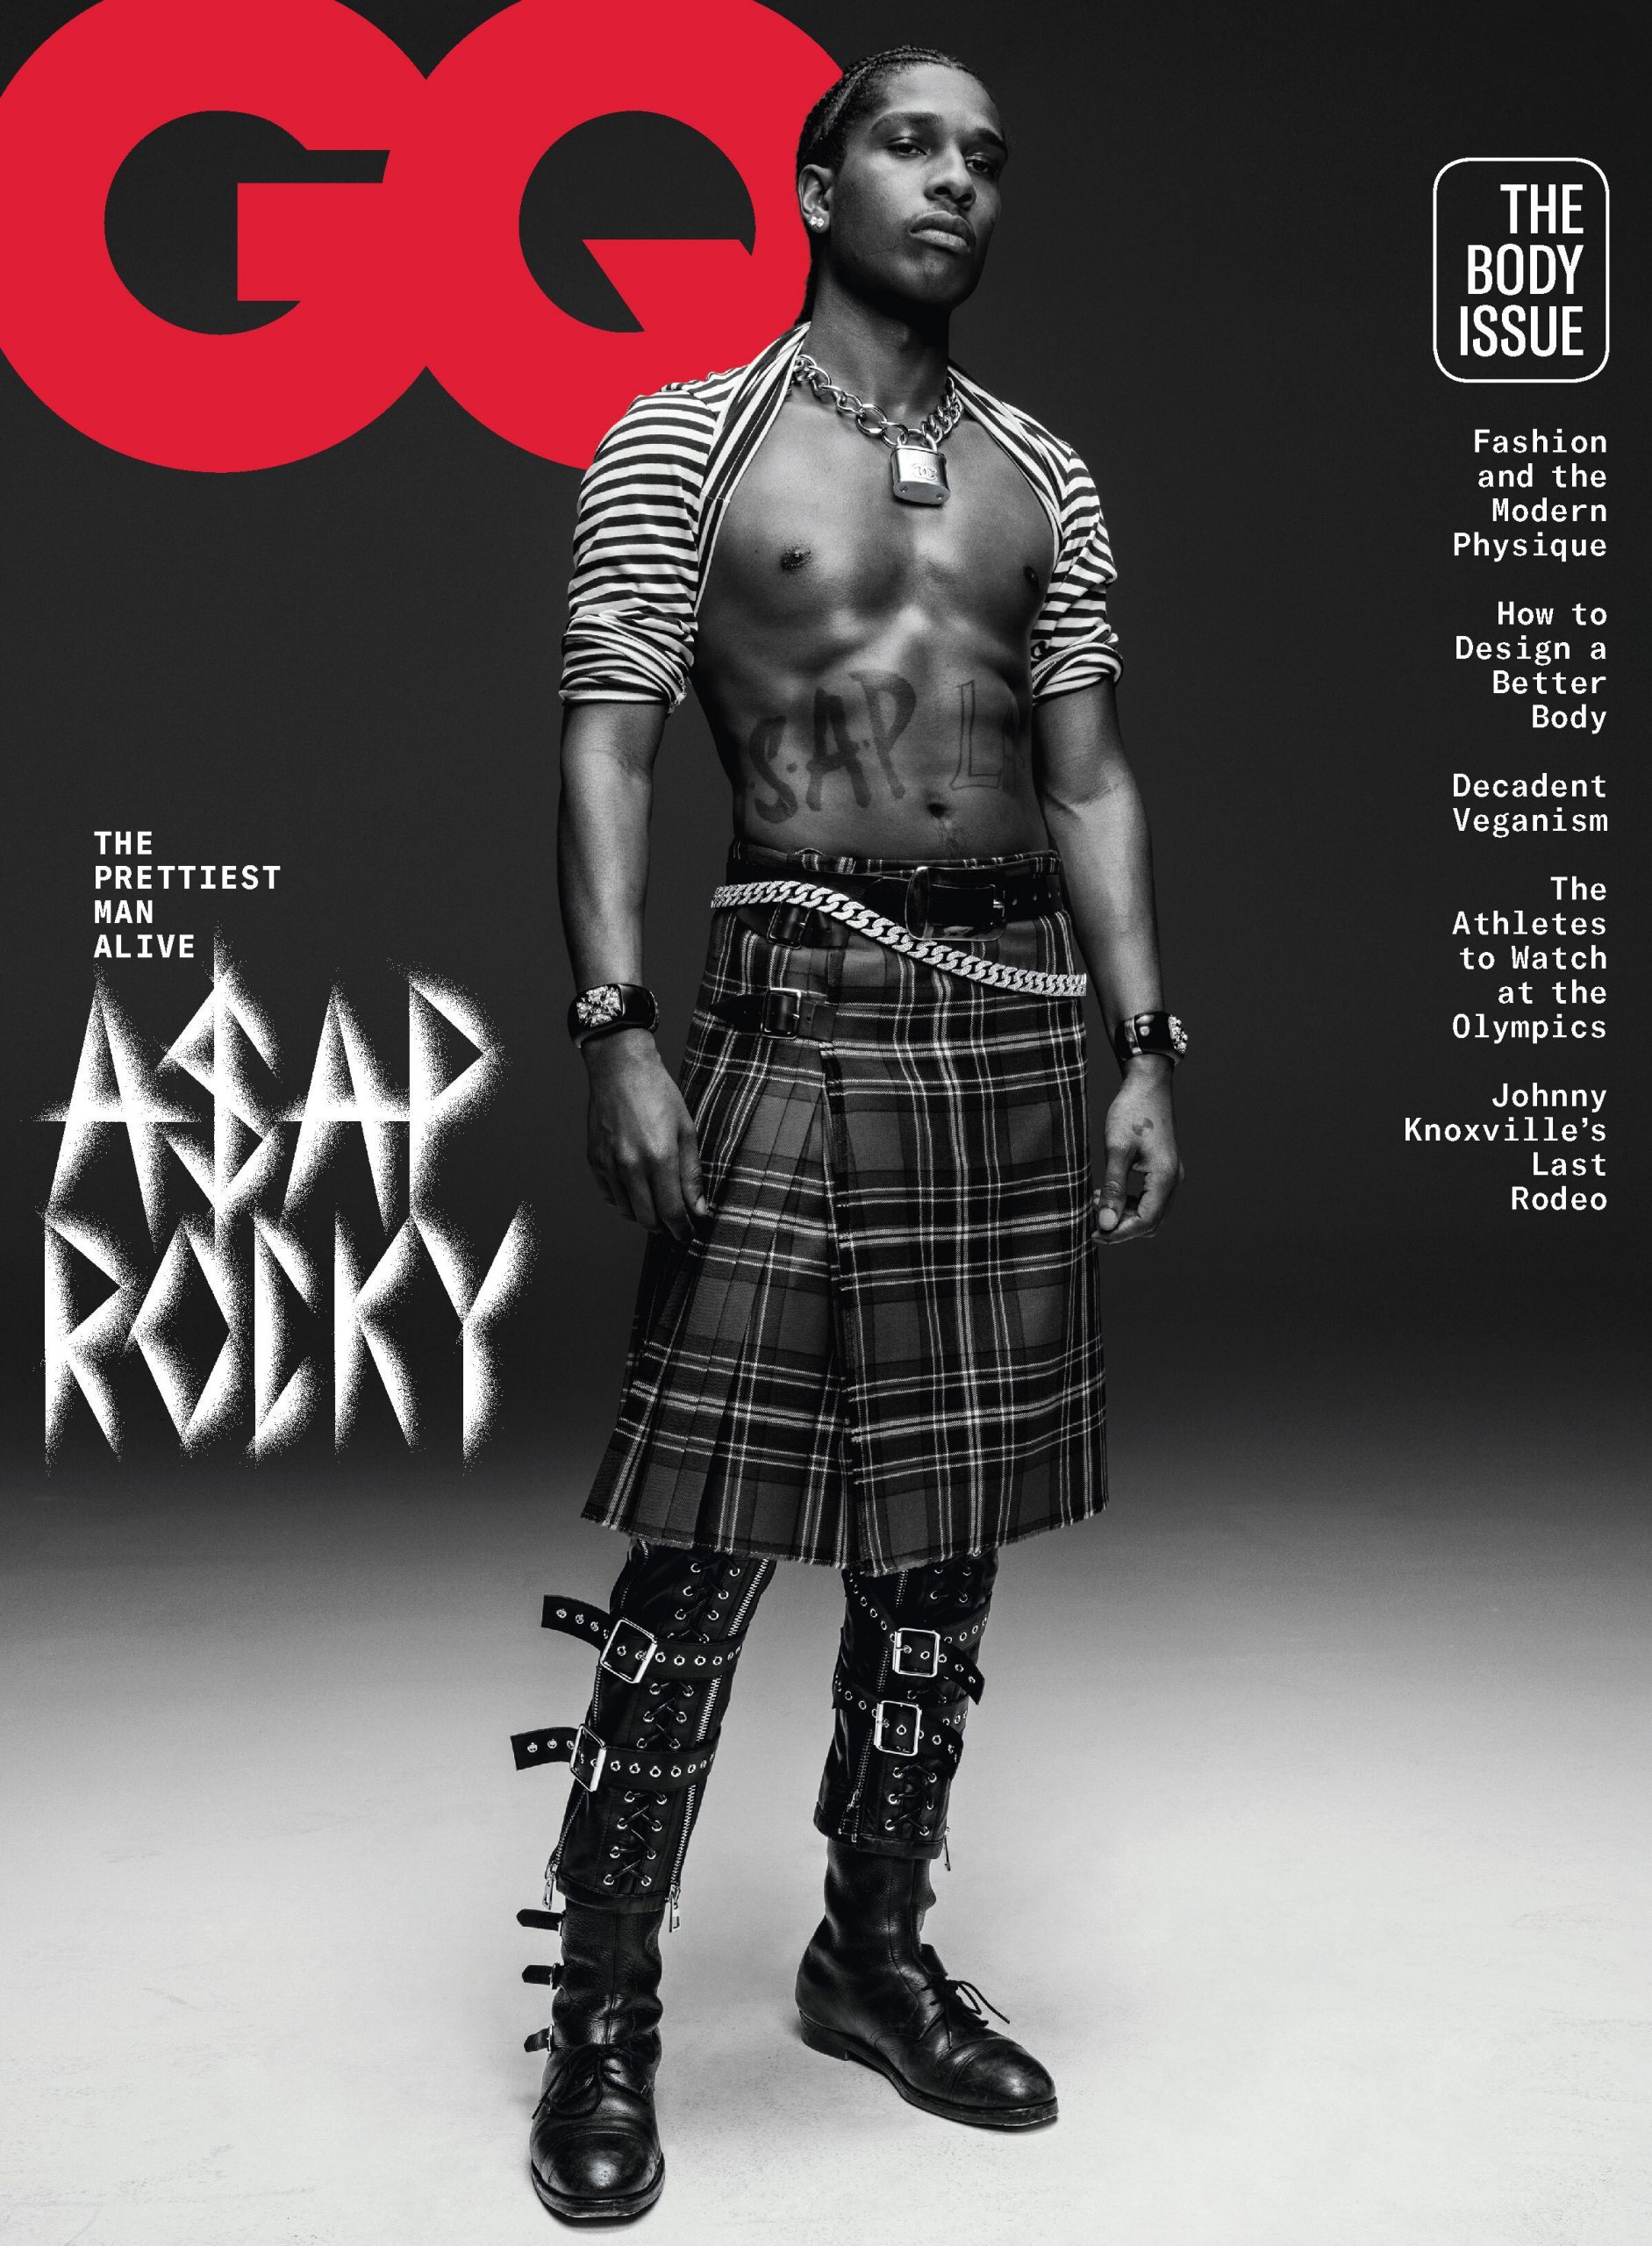 asap-rocky trên bìa tạp chí GQ